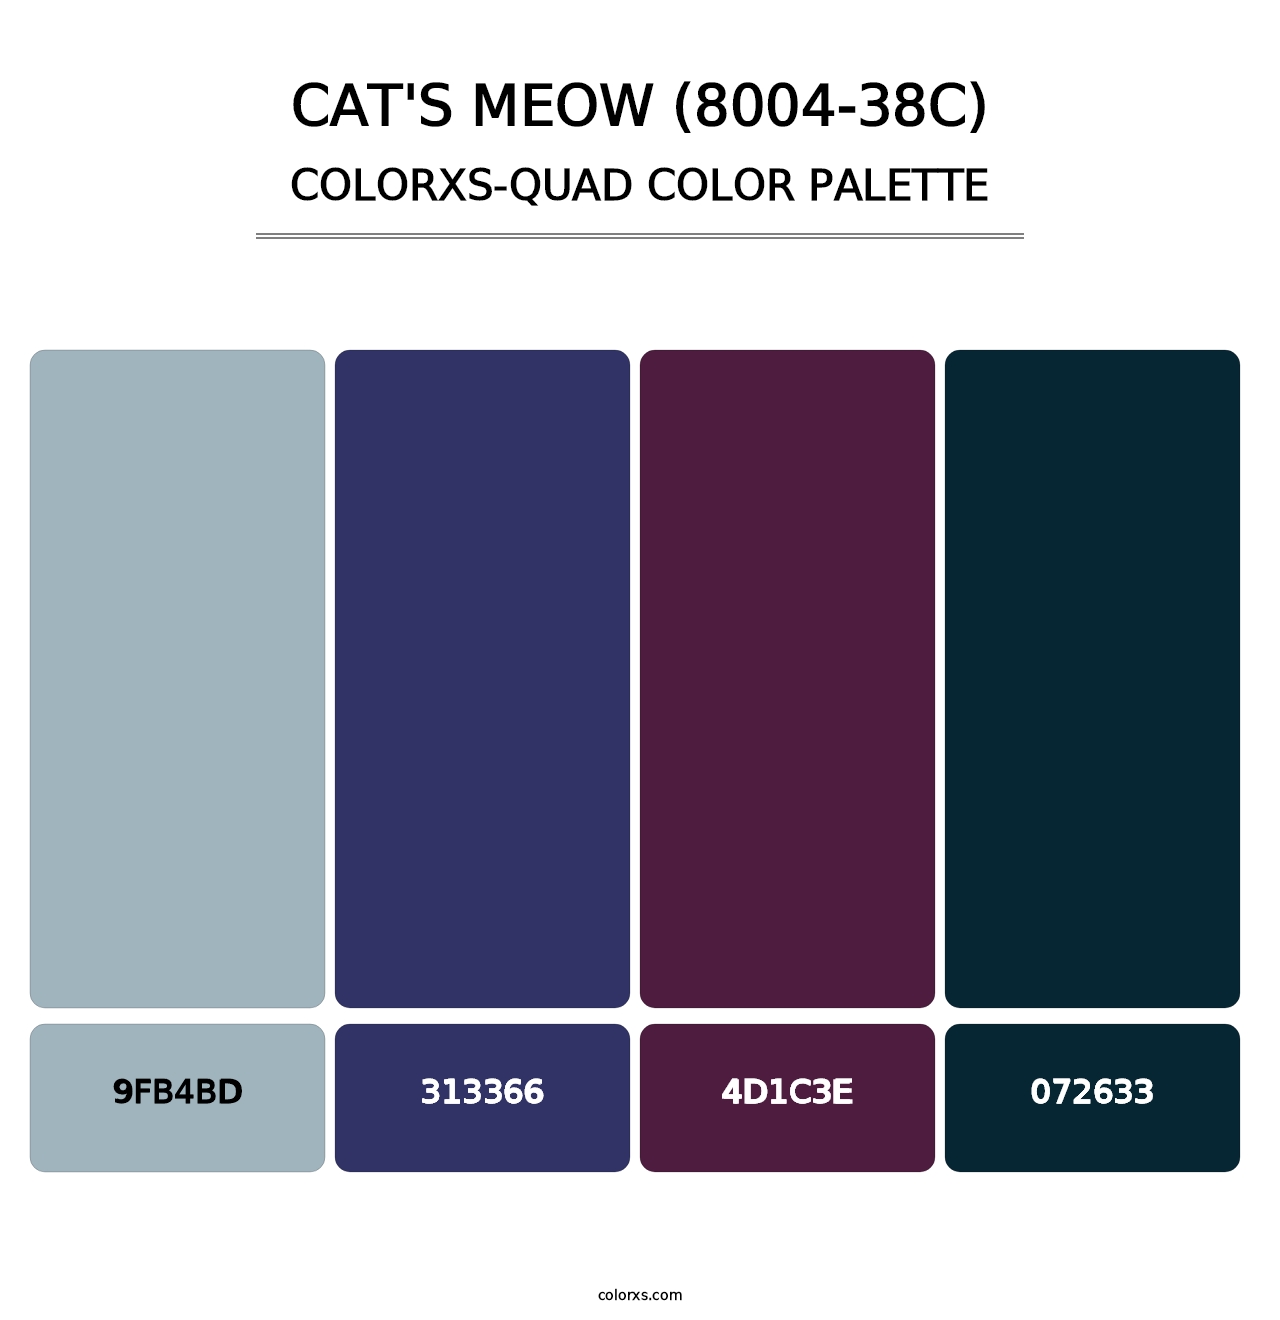 Cat's Meow (8004-38C) - Colorxs Quad Palette